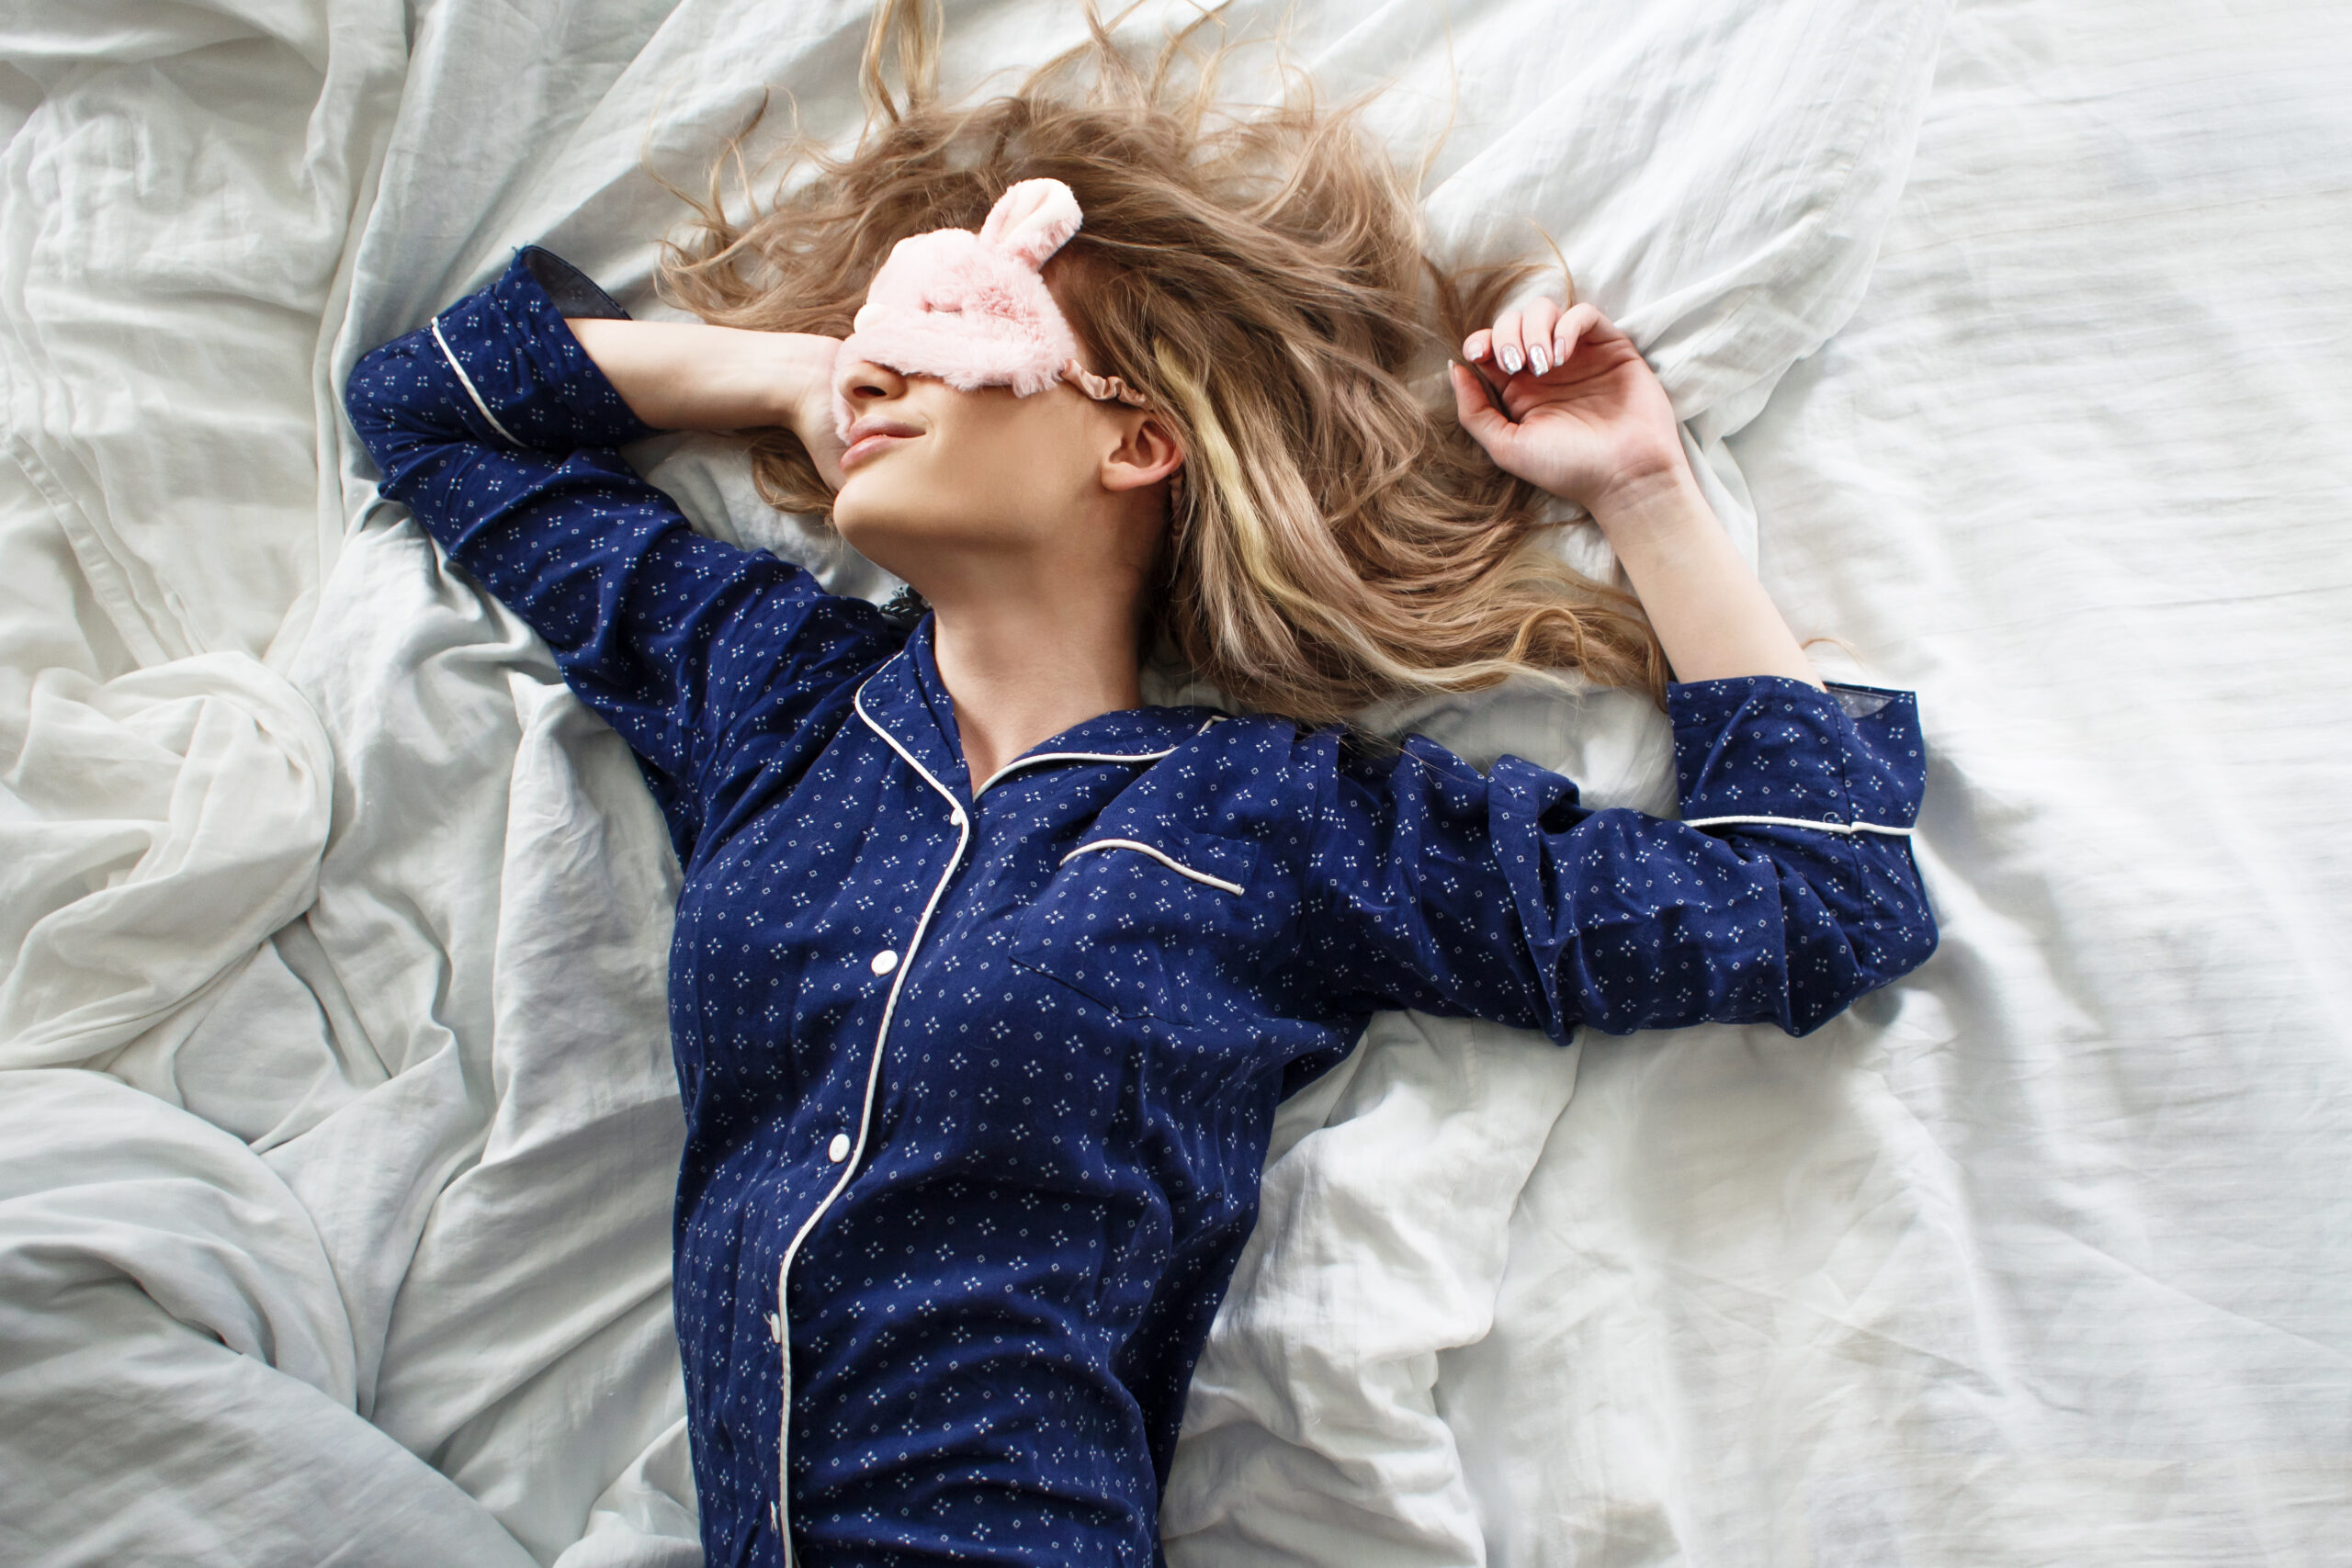 Kuna me magame ligi kolmandiku oma elust, on unel meie tervisele ja heaolule äärmiselt suur mõju. Unega seoses ringleb aga ka palju müüte, mis kasu asemel pigem